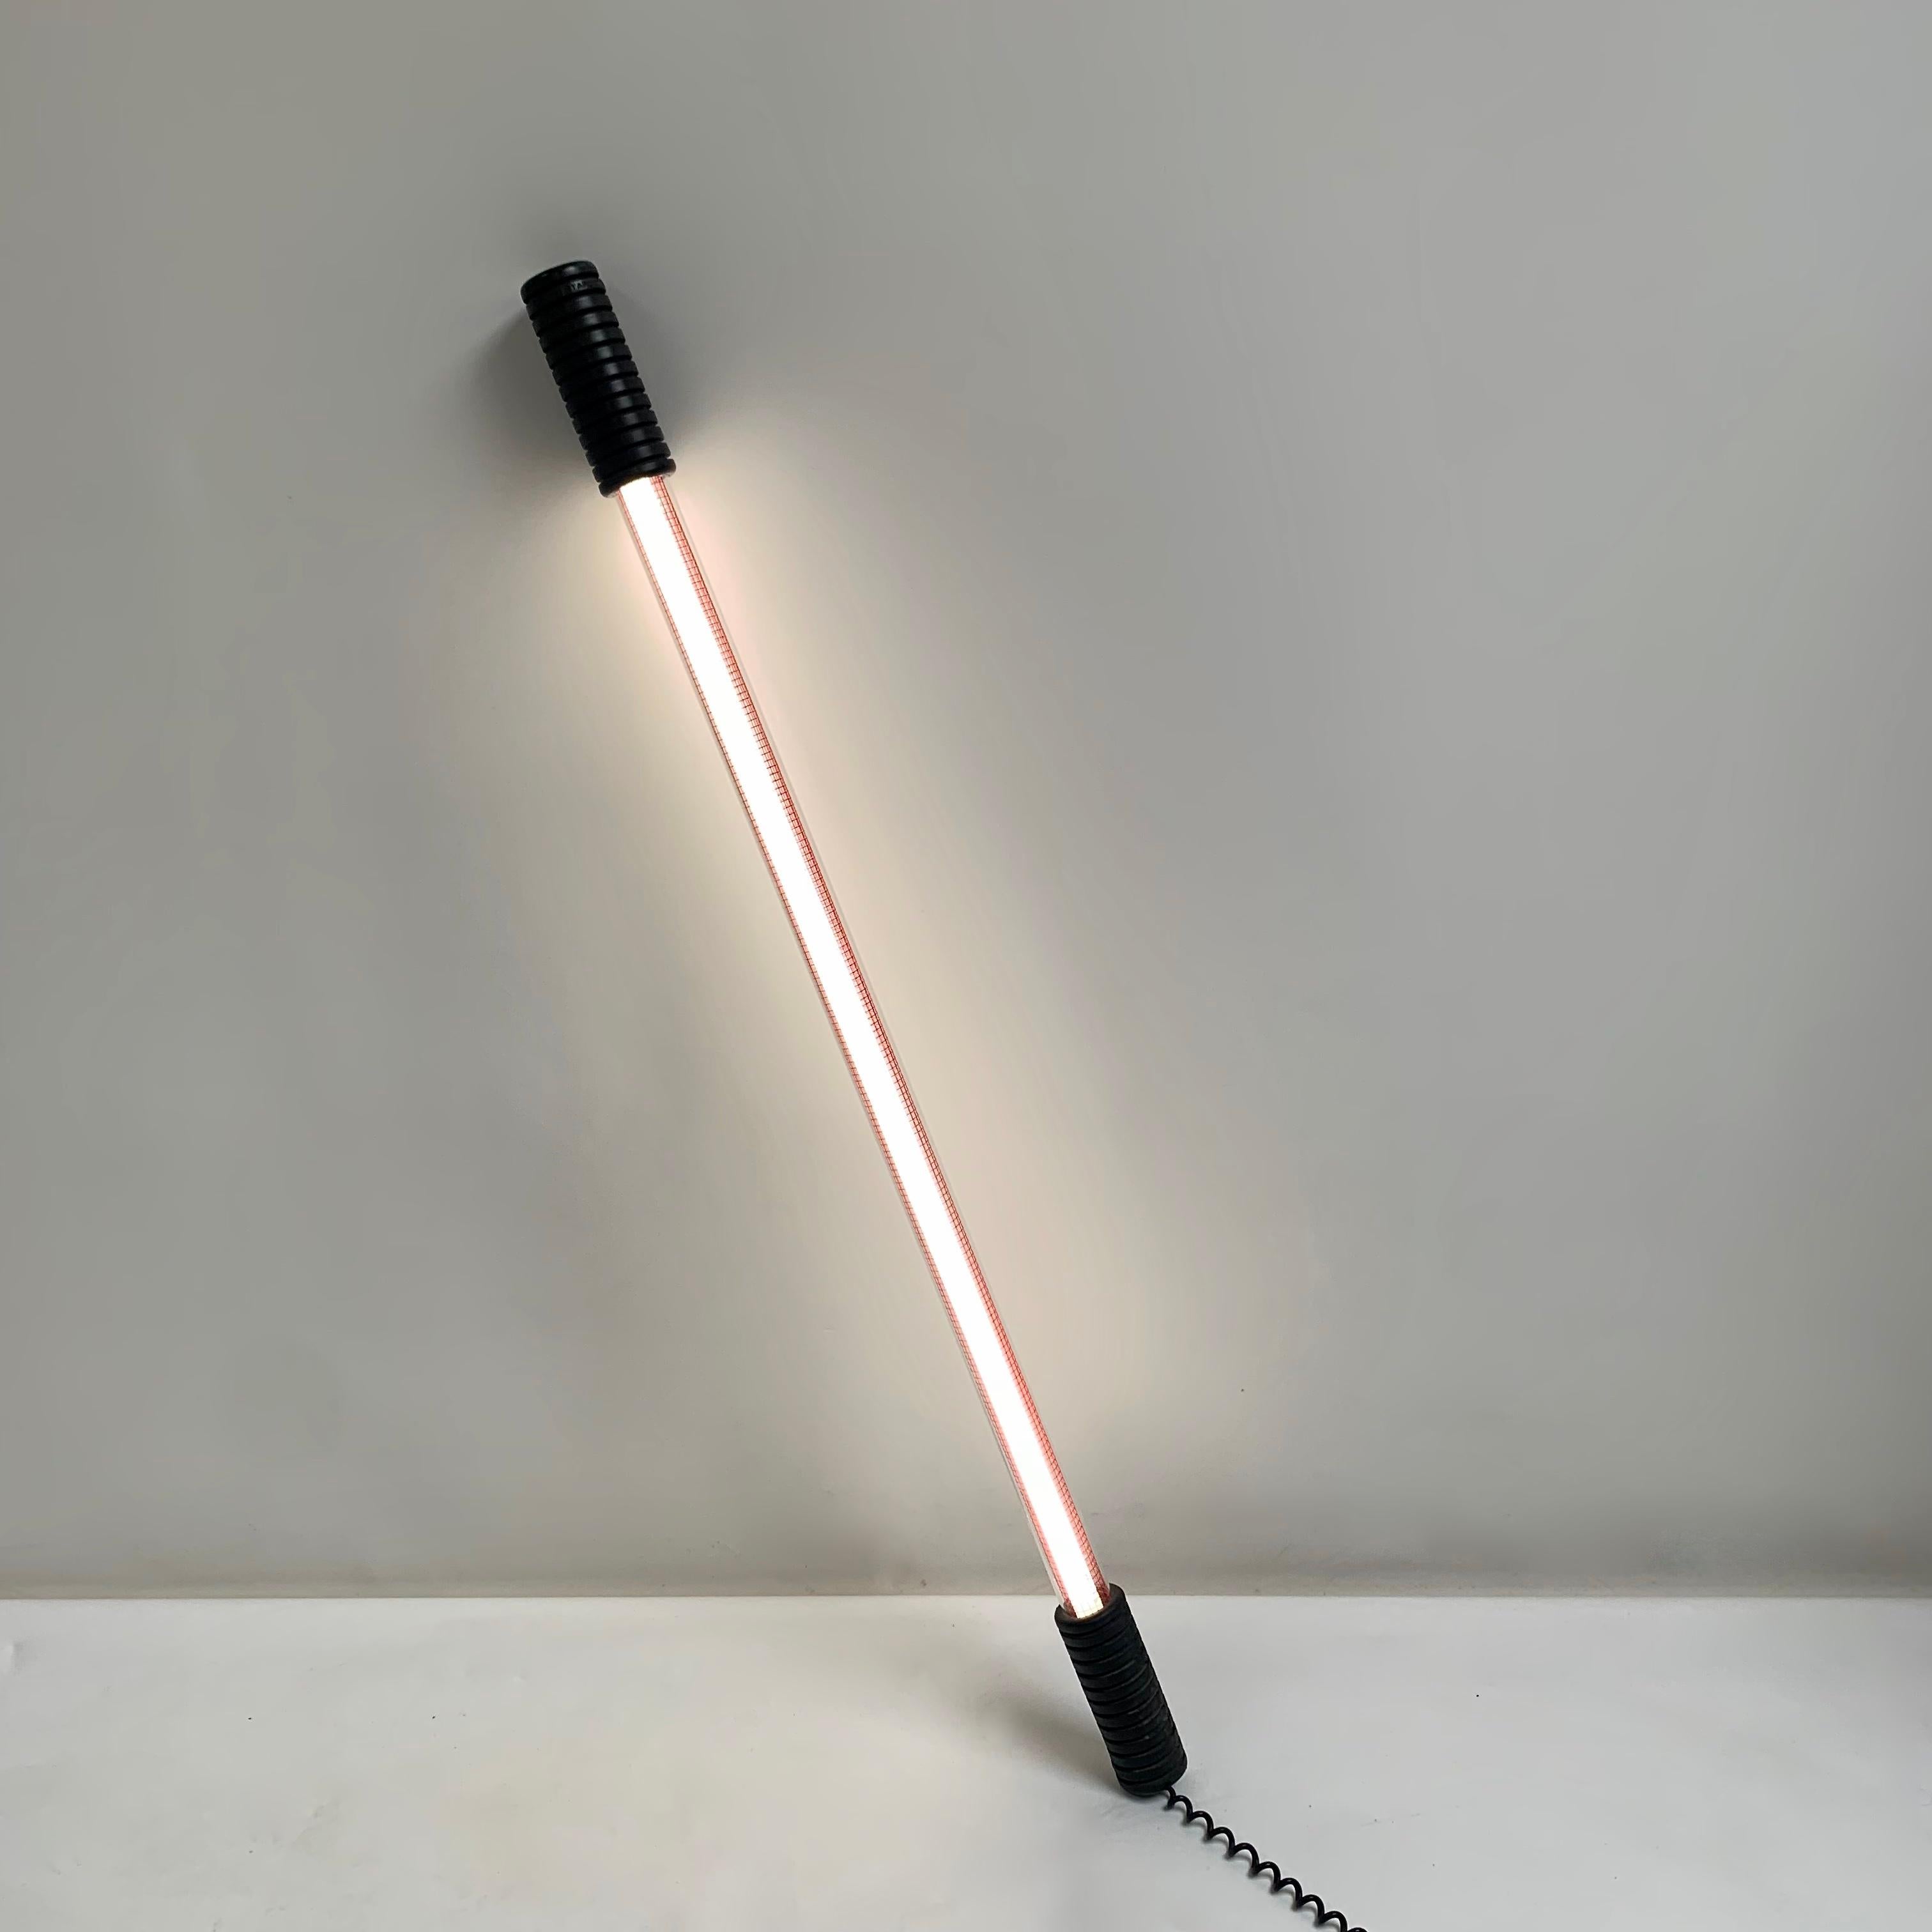 Rare lampadaire Philippe Starck modèle Easylight pour Electrorama, circa 1980, France.
Produit estampillé Starck. Première édition.
La lampe s'allume et s'éteint en l'inclinant, à l'aide d'un interrupteur au mercure.
Tube fluorescent, tube en